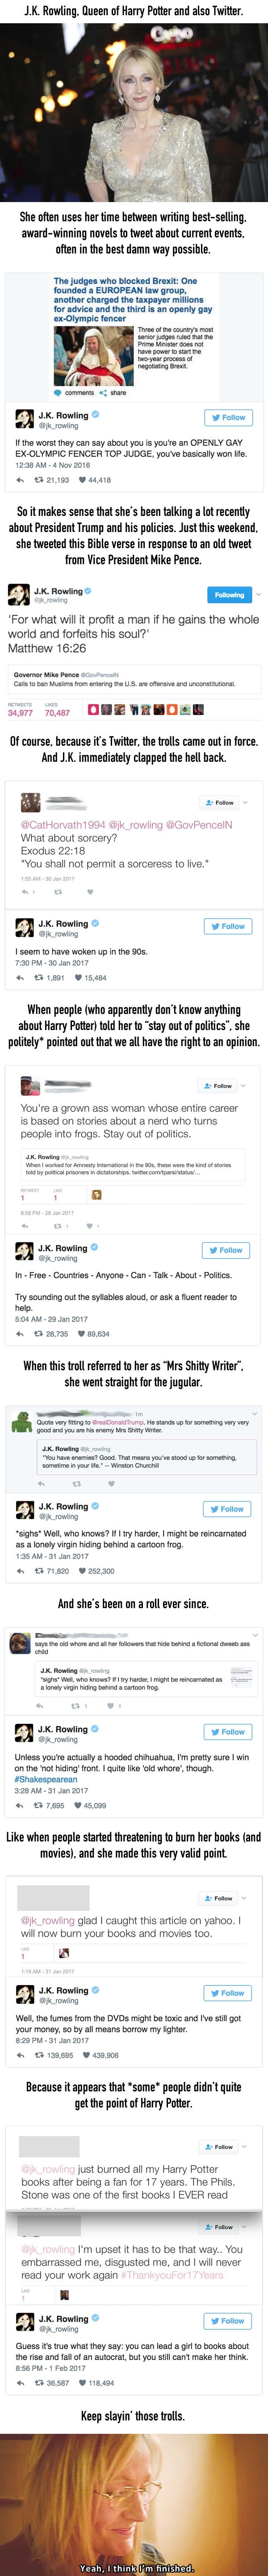 JK Rowling has been roasting twitter trolls nonstop lately